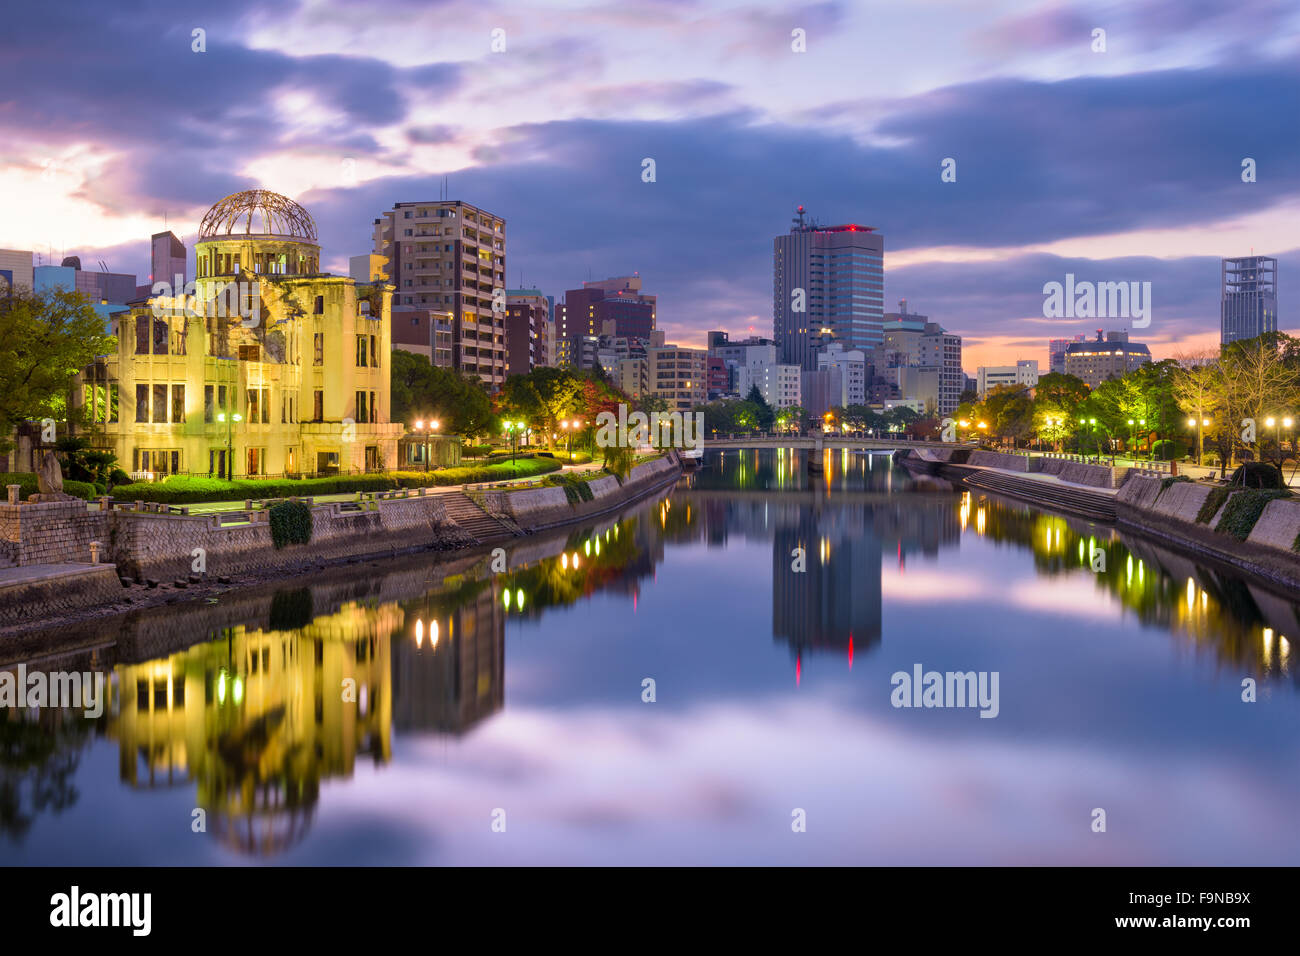 Hiroshima, Giappone skyline a livello atomico Dome e il Parco del Memoriale della Pace. Foto Stock